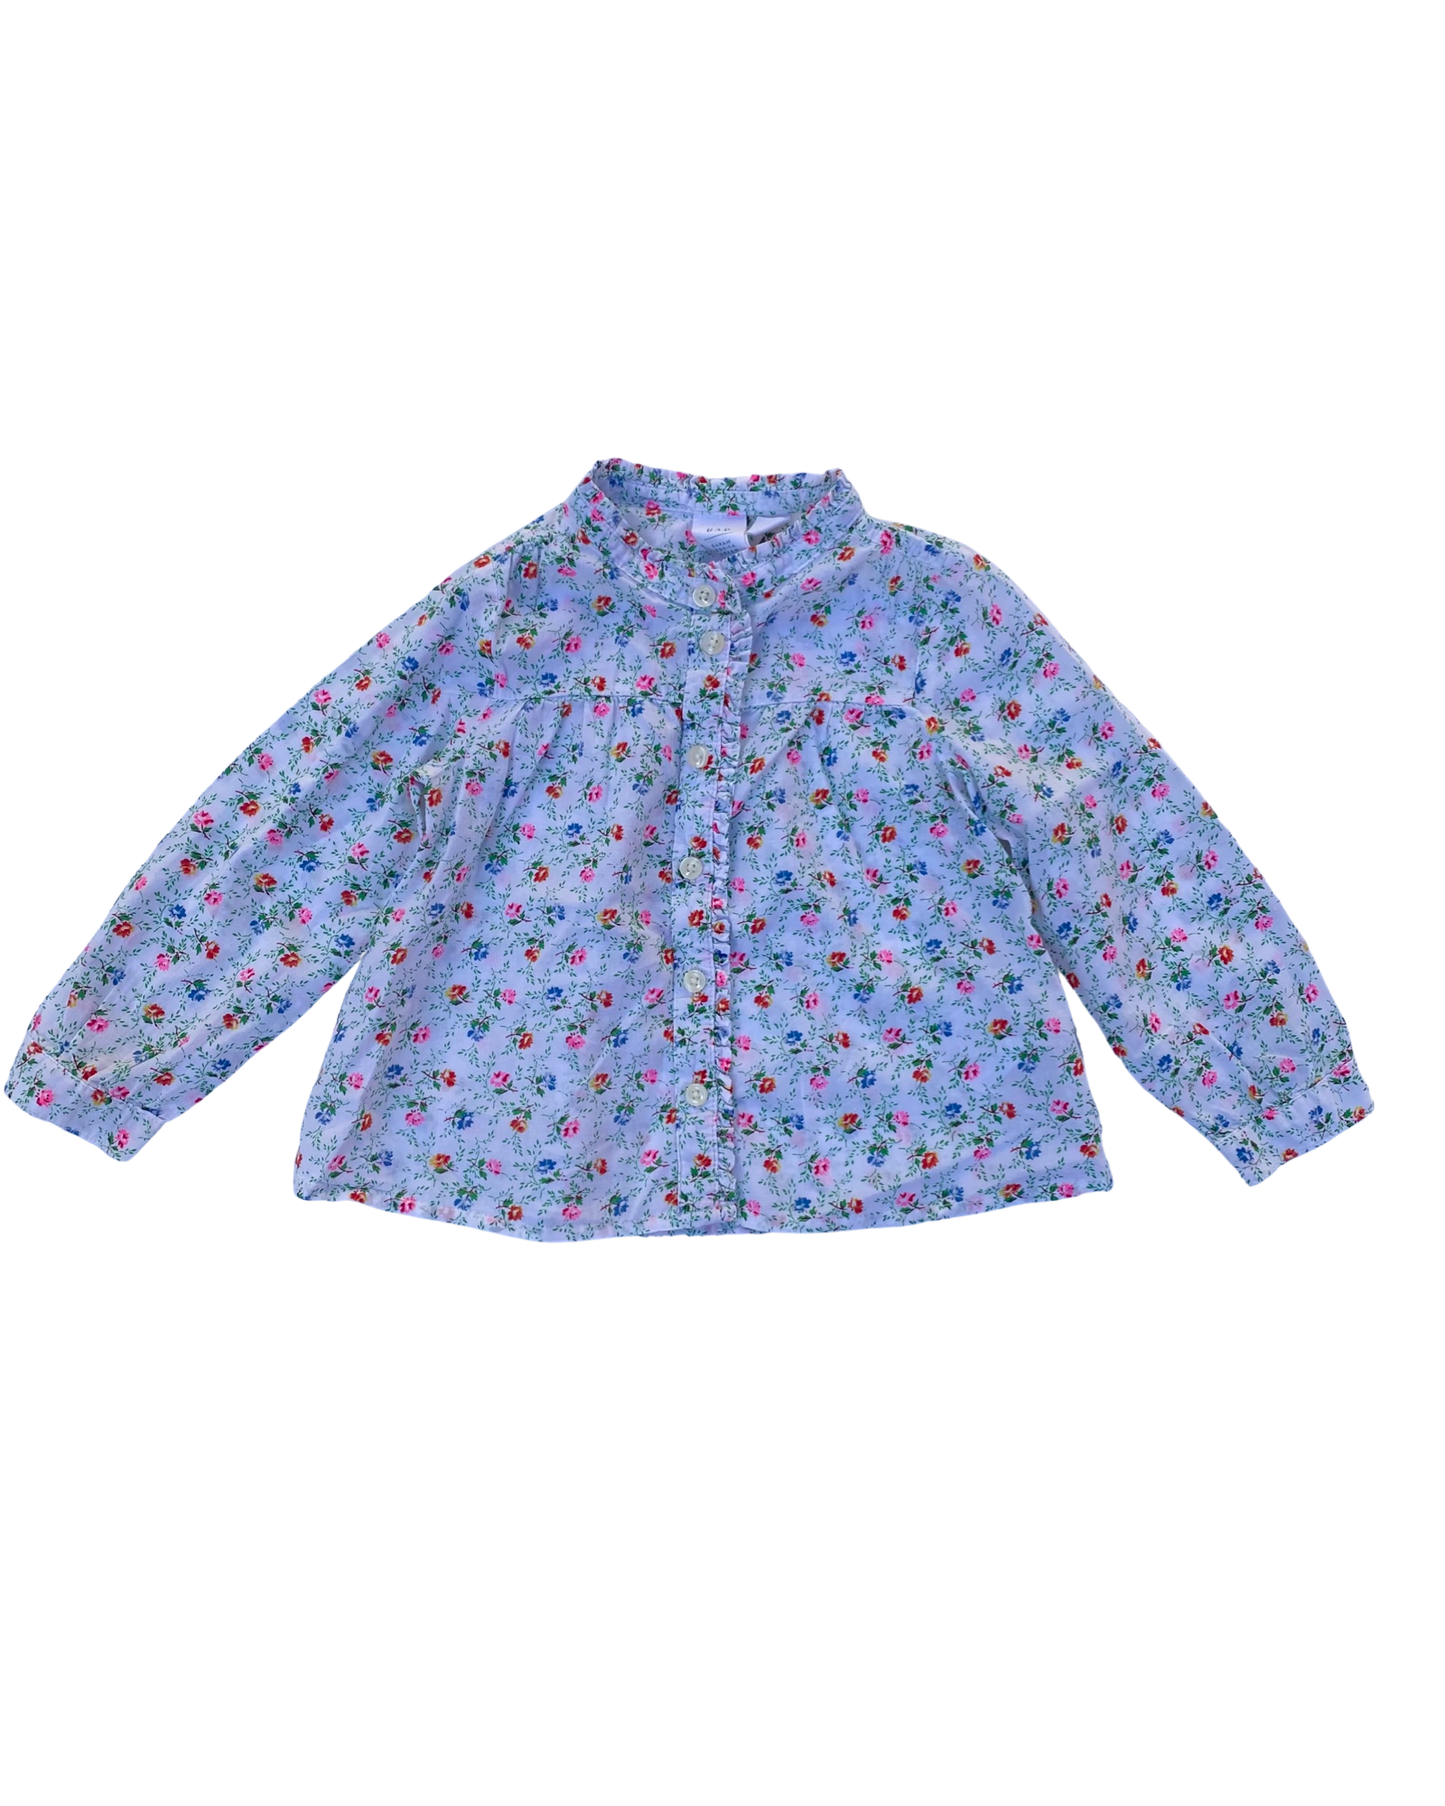 Gap x SJP floral print blouse (size 1-2yrs)